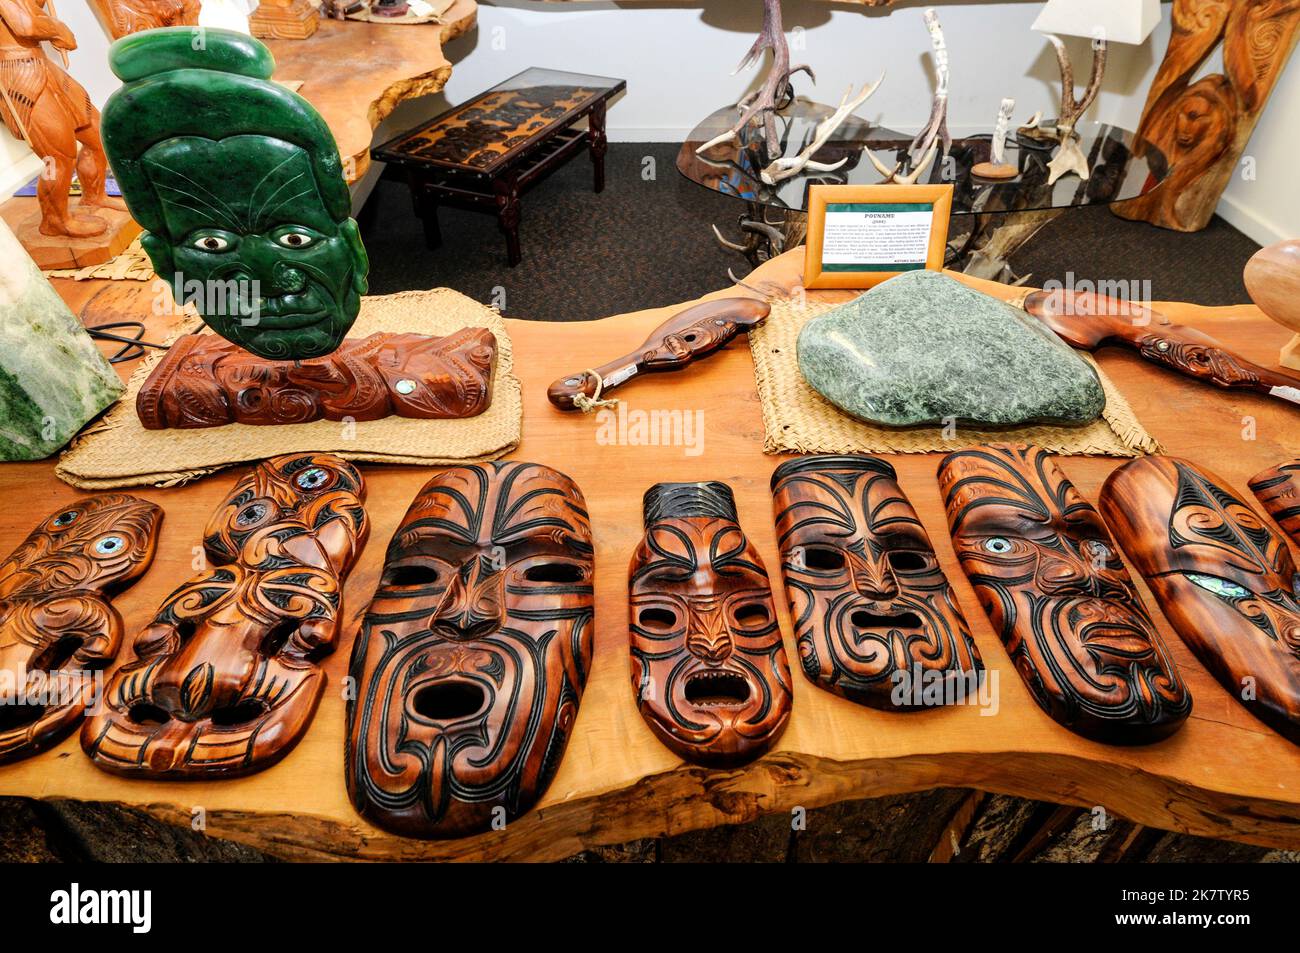 Objets maoris en vente dans une galerie d'art et d'artisanat maori dans la petite ville de Whataroa, dans le sud du pays de l'ouest, sur l'île du Sud, en Nouvelle-Zélande Banque D'Images